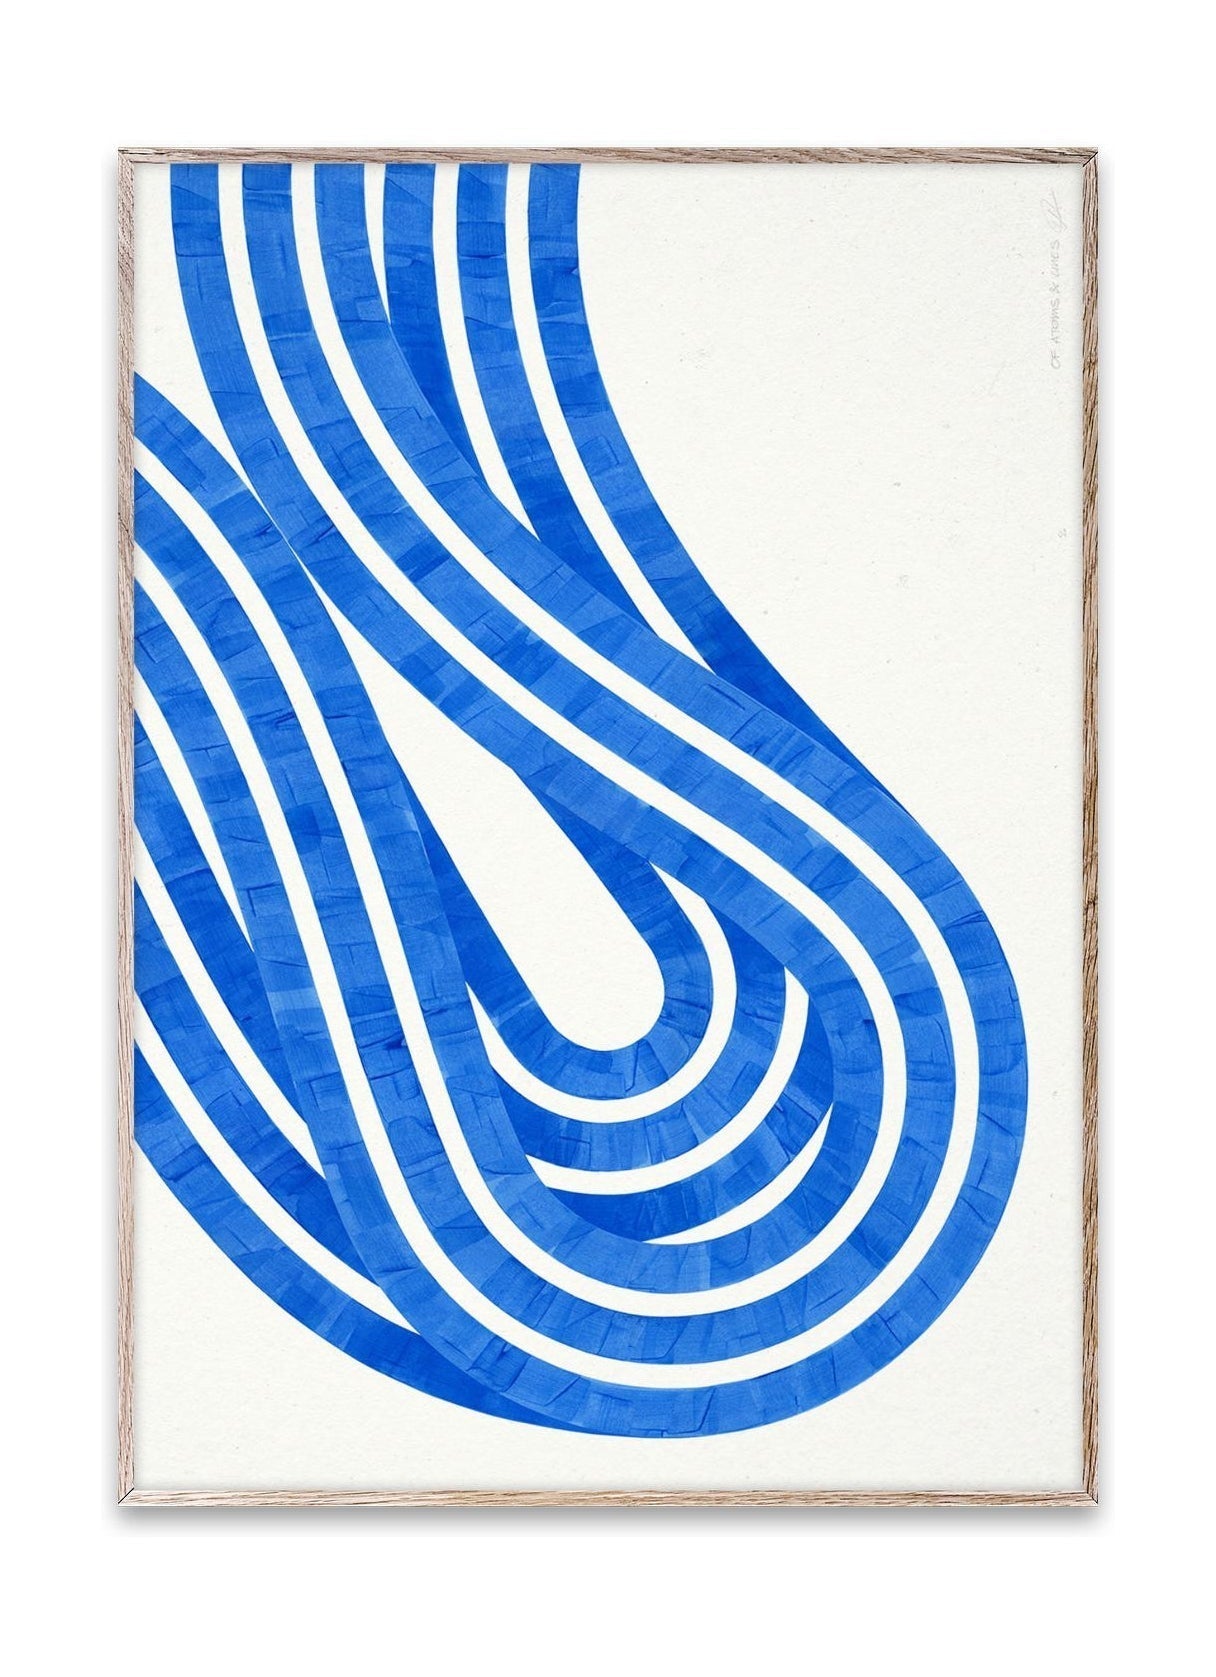 Paper Collective Entropy Blue 02 plakat, 50x70 cm